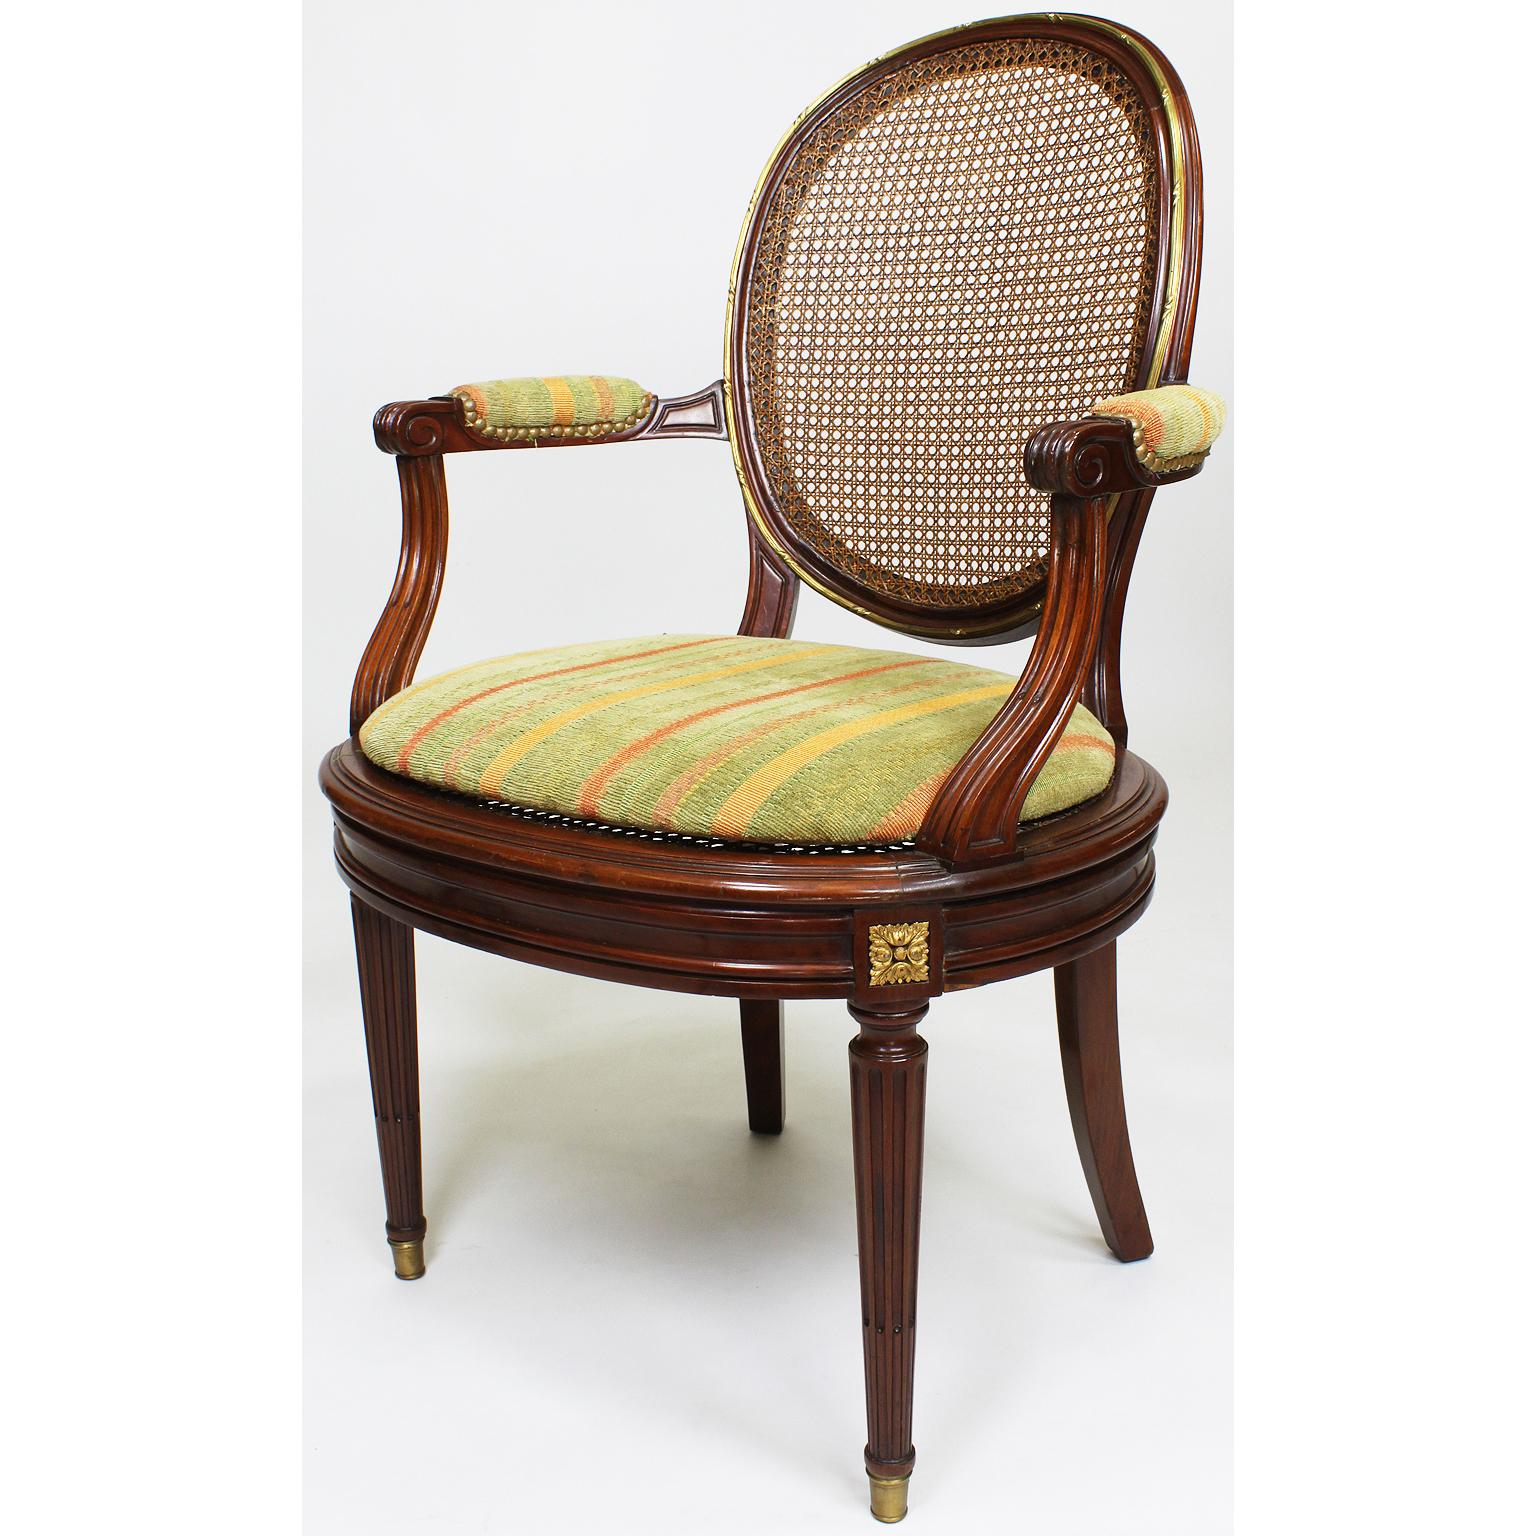 Ein feines Paar französischer Belle-Époque-Sessel im Stil Ludwigs XVI. des 19. und 20. Jahrhunderts aus Mahagoni und Ormolu, montiert als Ess- oder Schreibtischsessel. Die eiförmigen Rohrrückenlehnen und Sitze mit gepolsterten, offenen Armlehnen